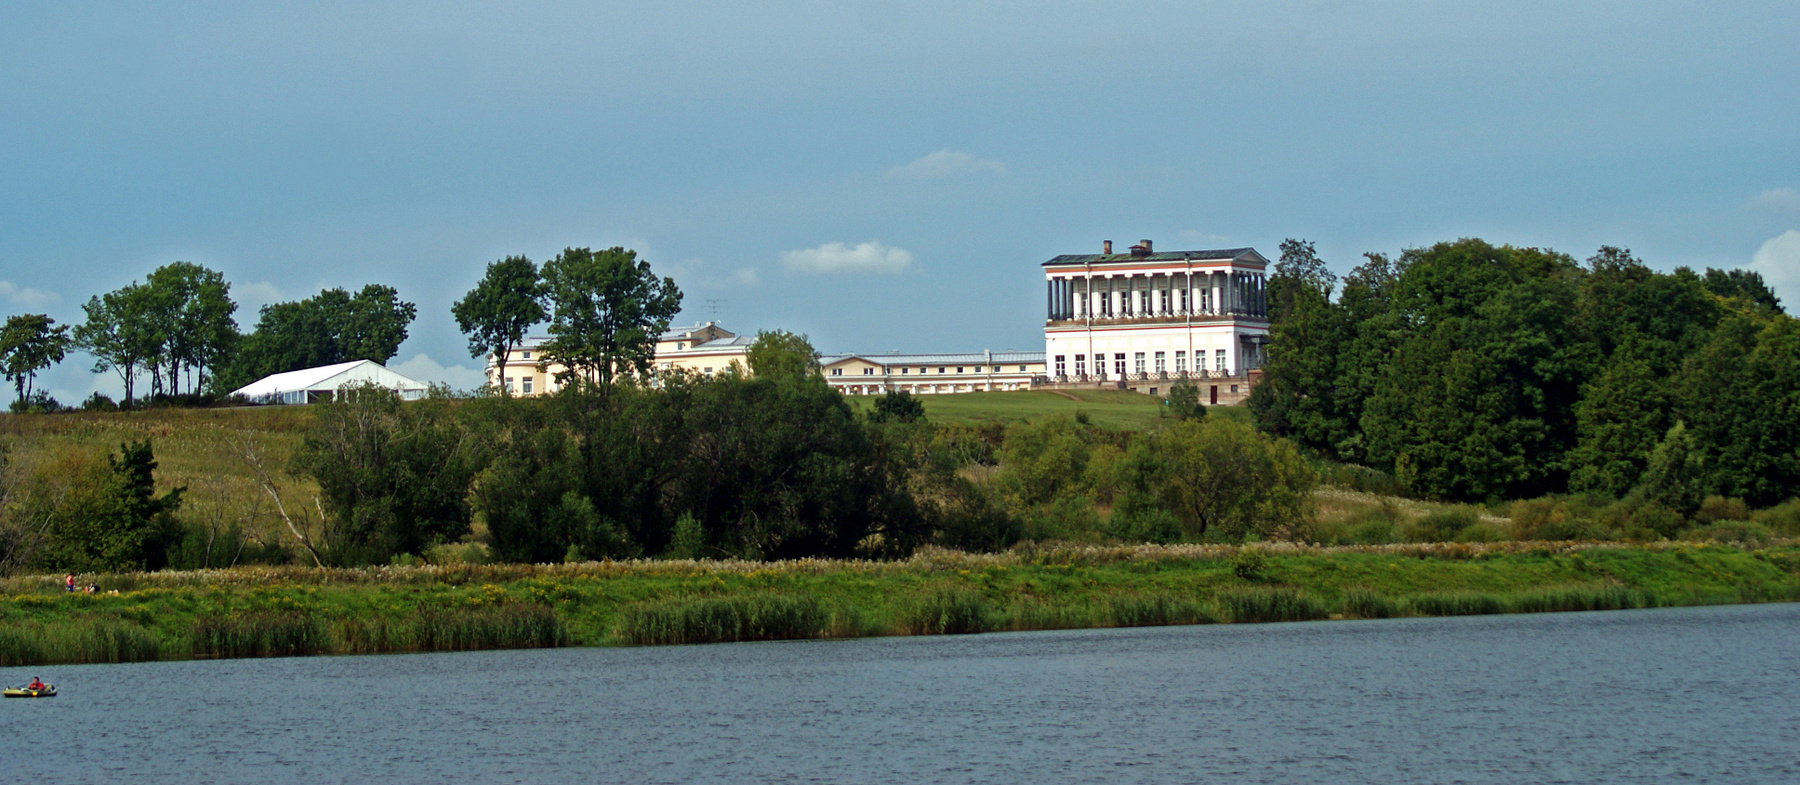 Дворец "Бельведер" 2 сентября 2015 дворец осень петергоф петродворец пруд